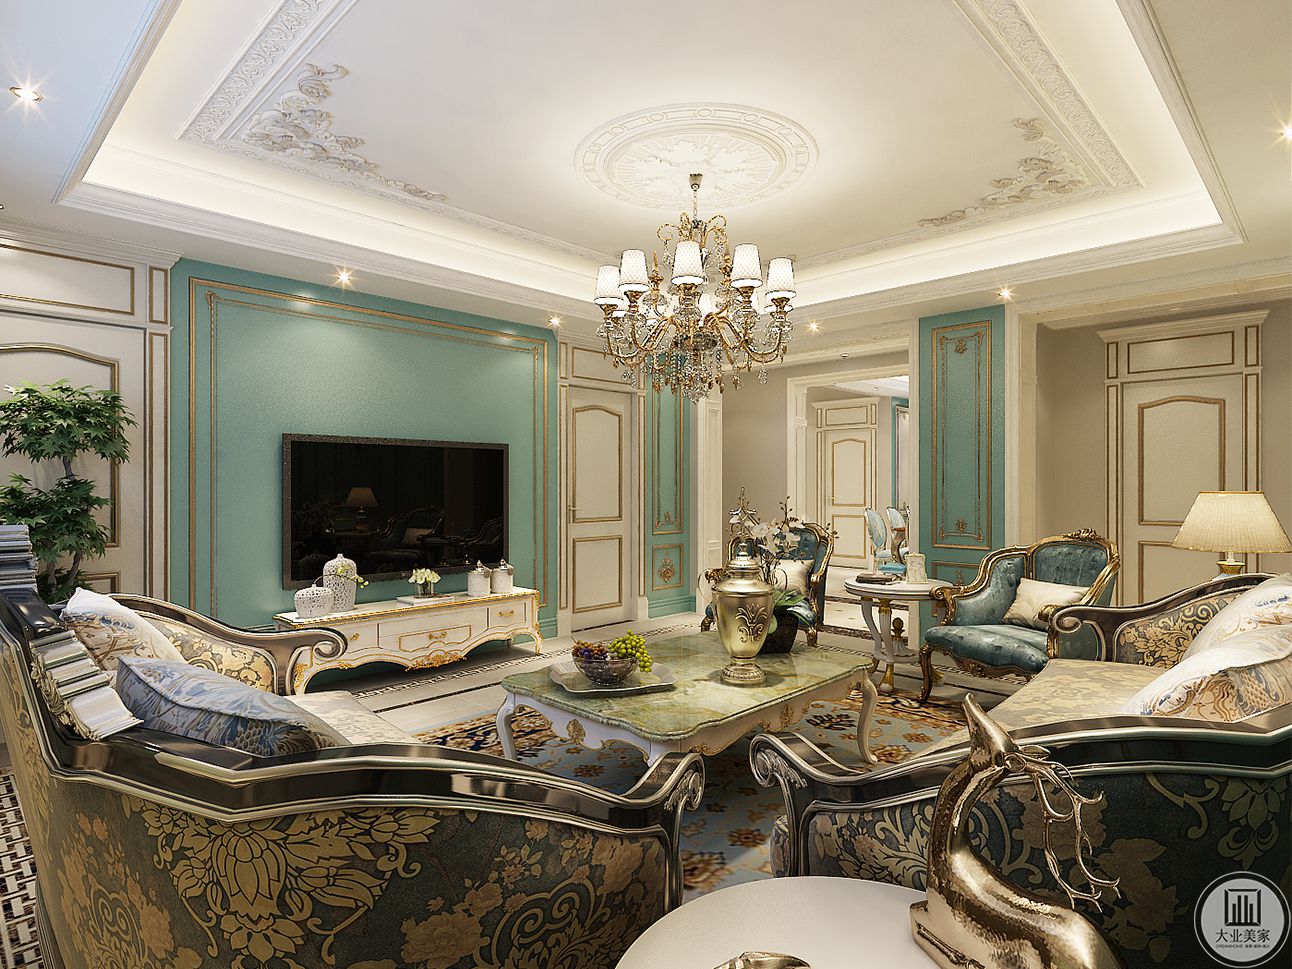 客厅的吊顶与沙发都极具奢华，墙面采用淡绿色为主题色，与法式风格相呼应。